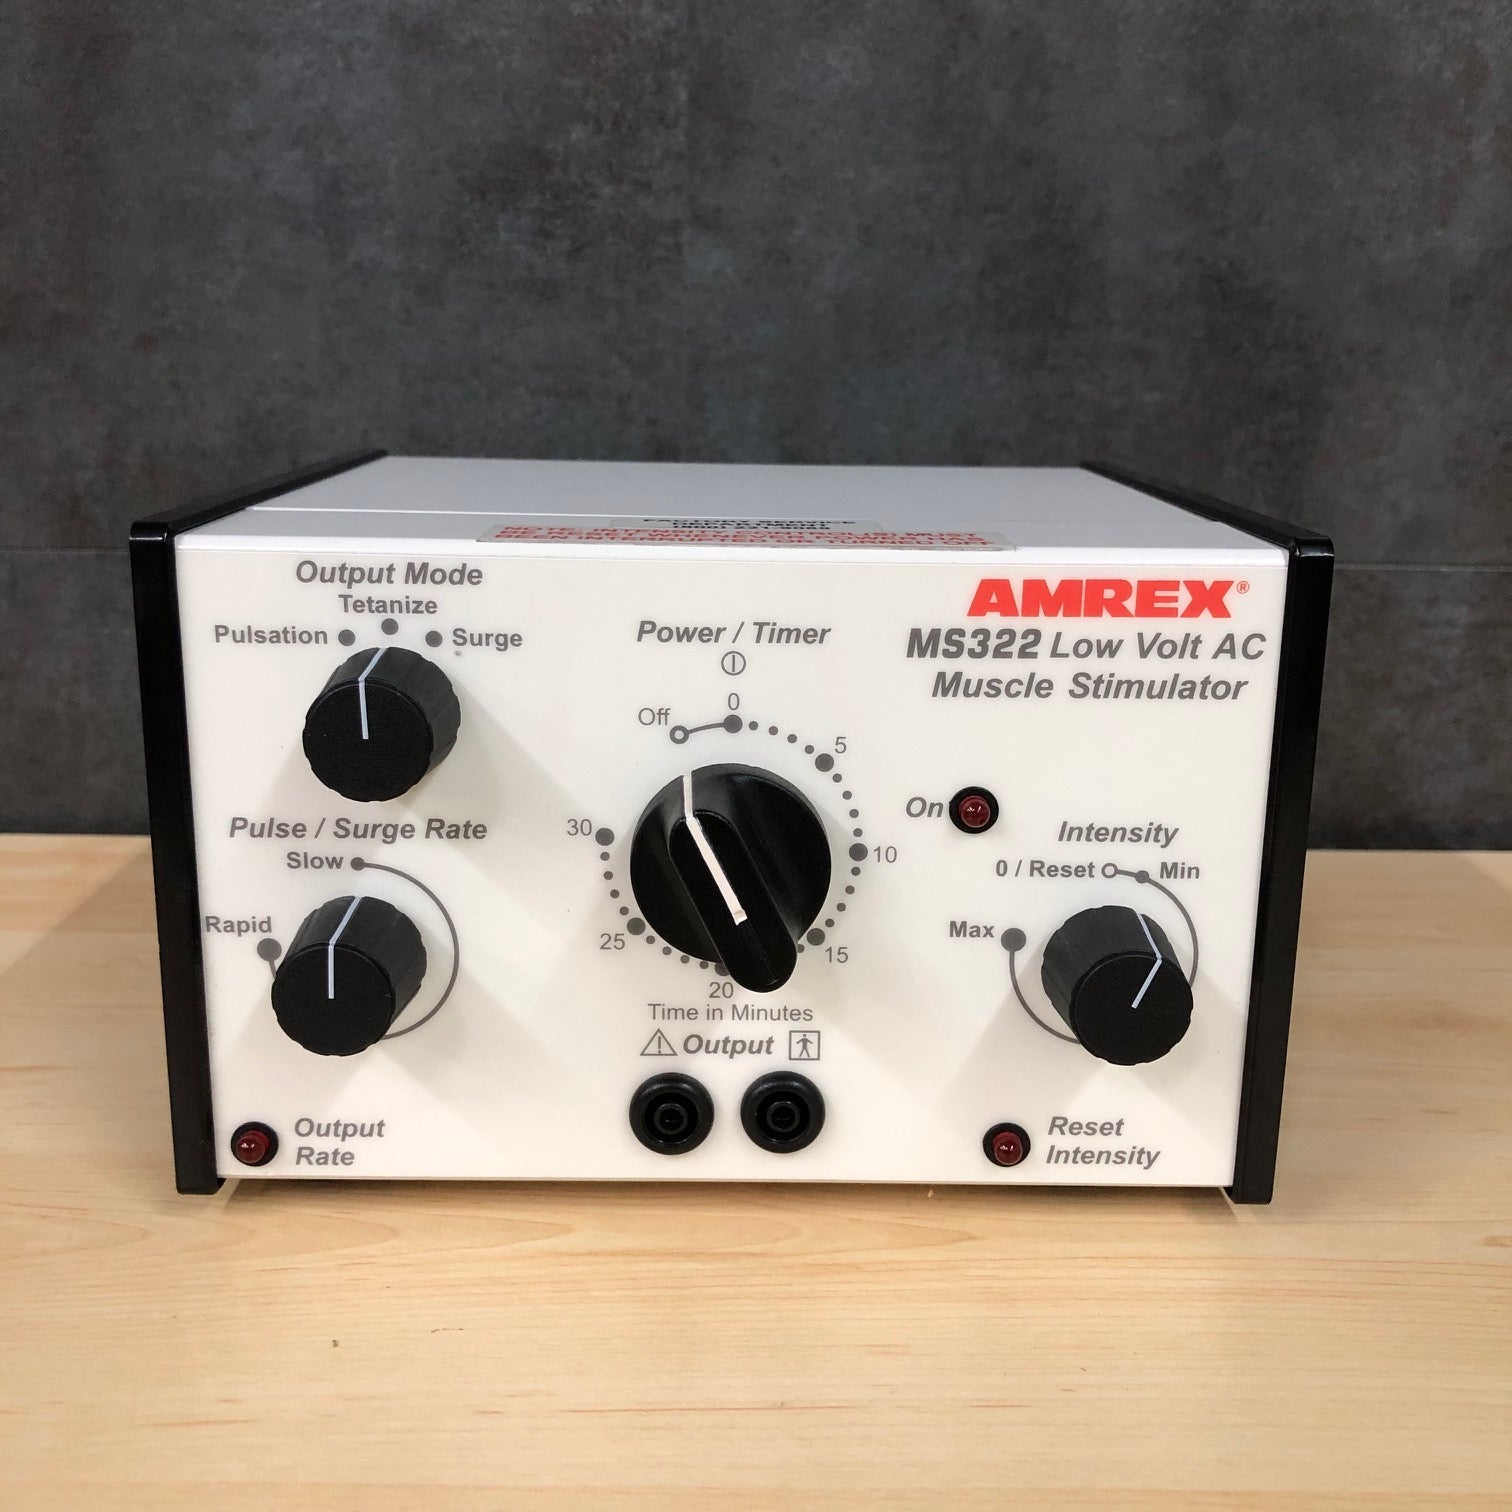 Amrex MS 322 Low Volt AC Muscle Stimulator